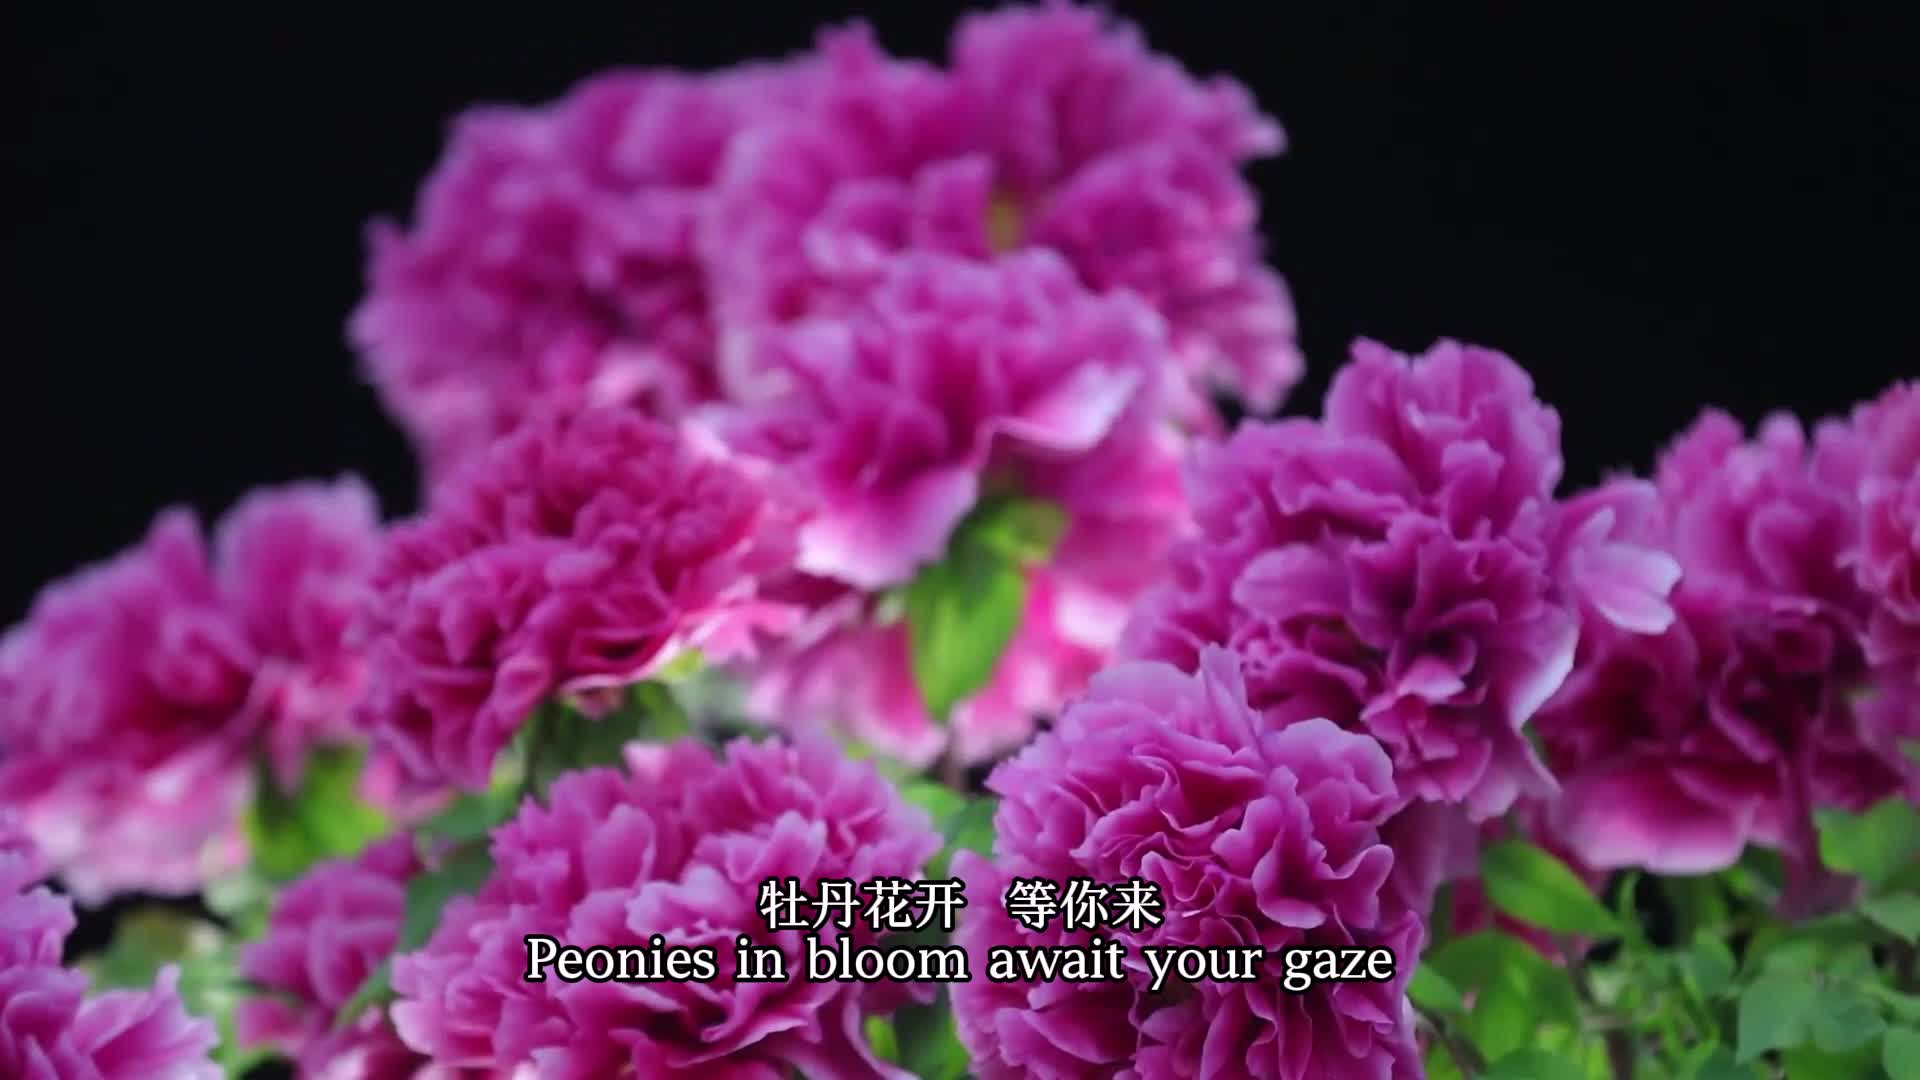 Peonies in bloom await your gaze